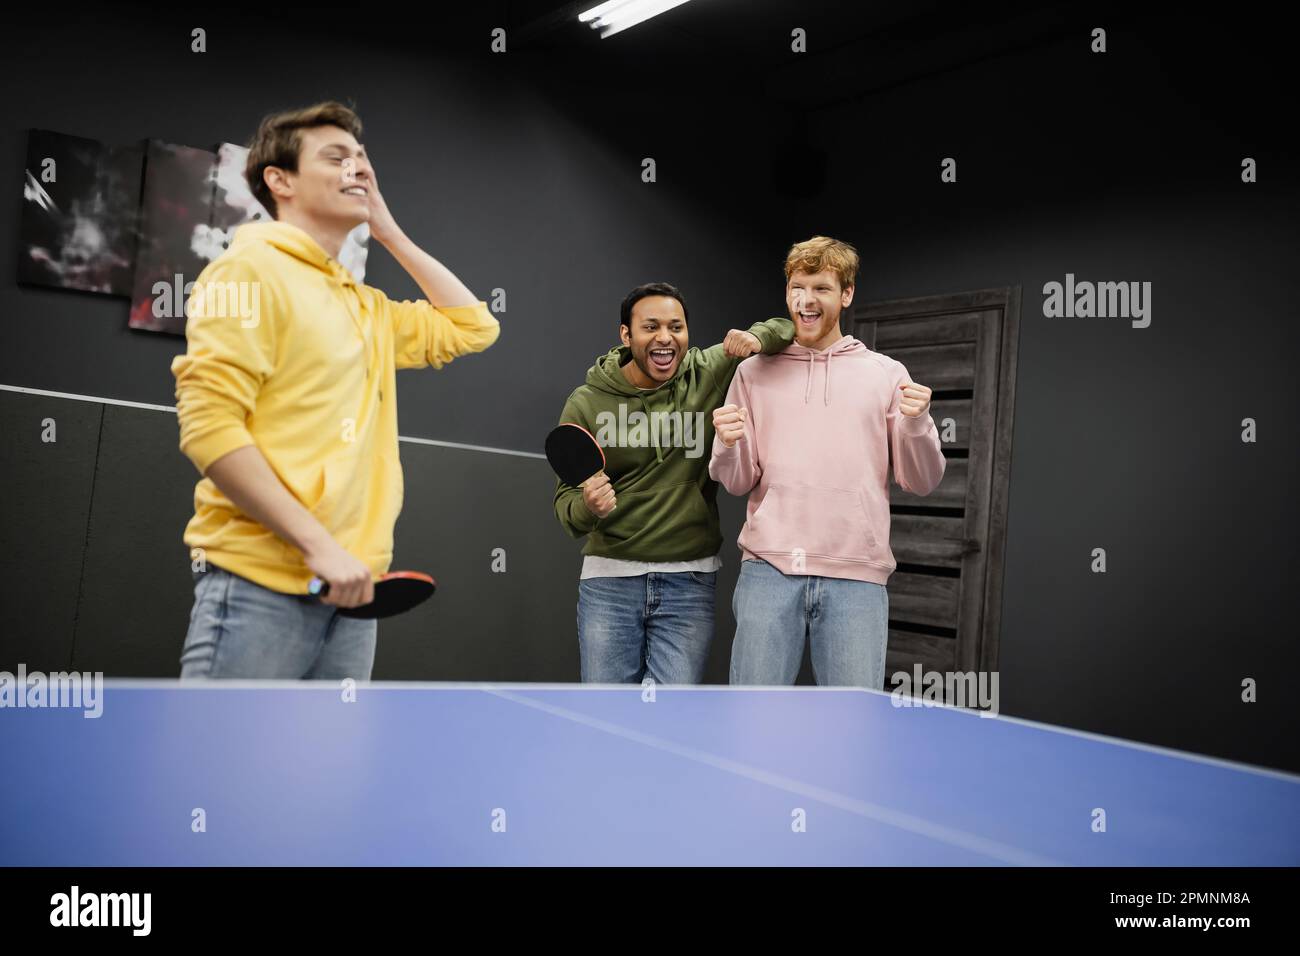 Aufgeregte, gemischtrassige Männer stehen neben einem verschwommenen Freund mit Tennisschläger im Spielclub, Aktienbild Stockfoto